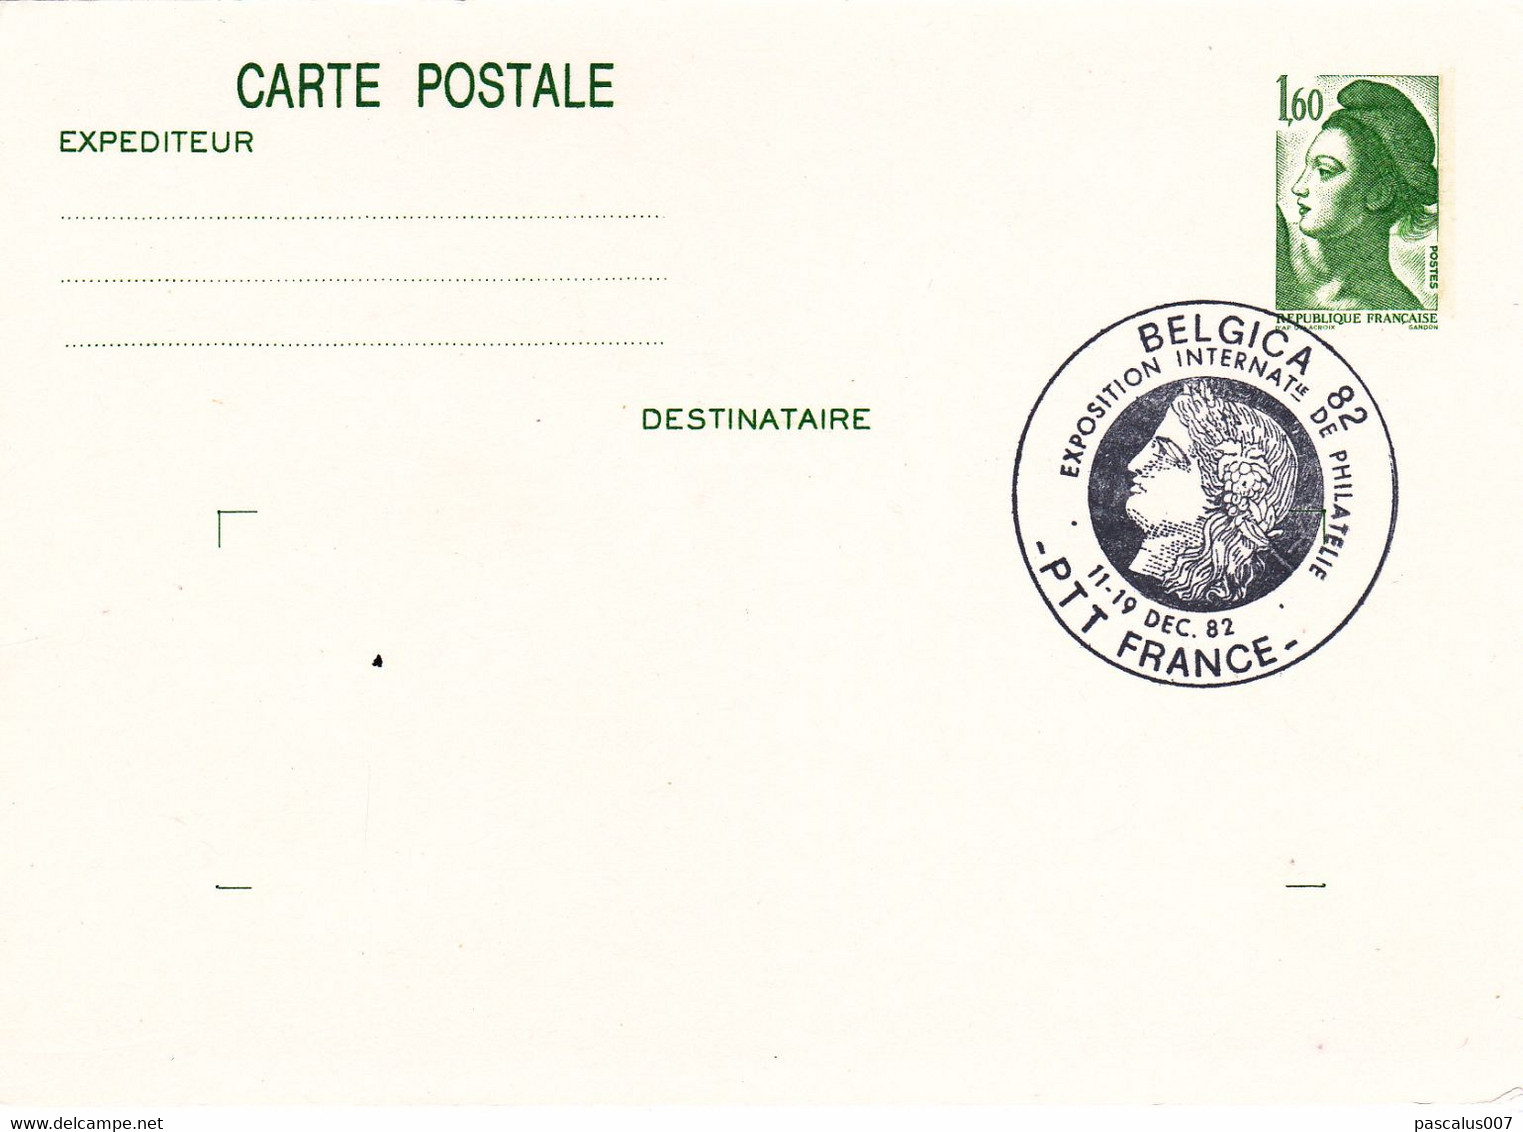 B01-373 2 Cartes Postales Entiers Postaux France 1982 Belgica - Konvolute: Ganzsachen & PAP